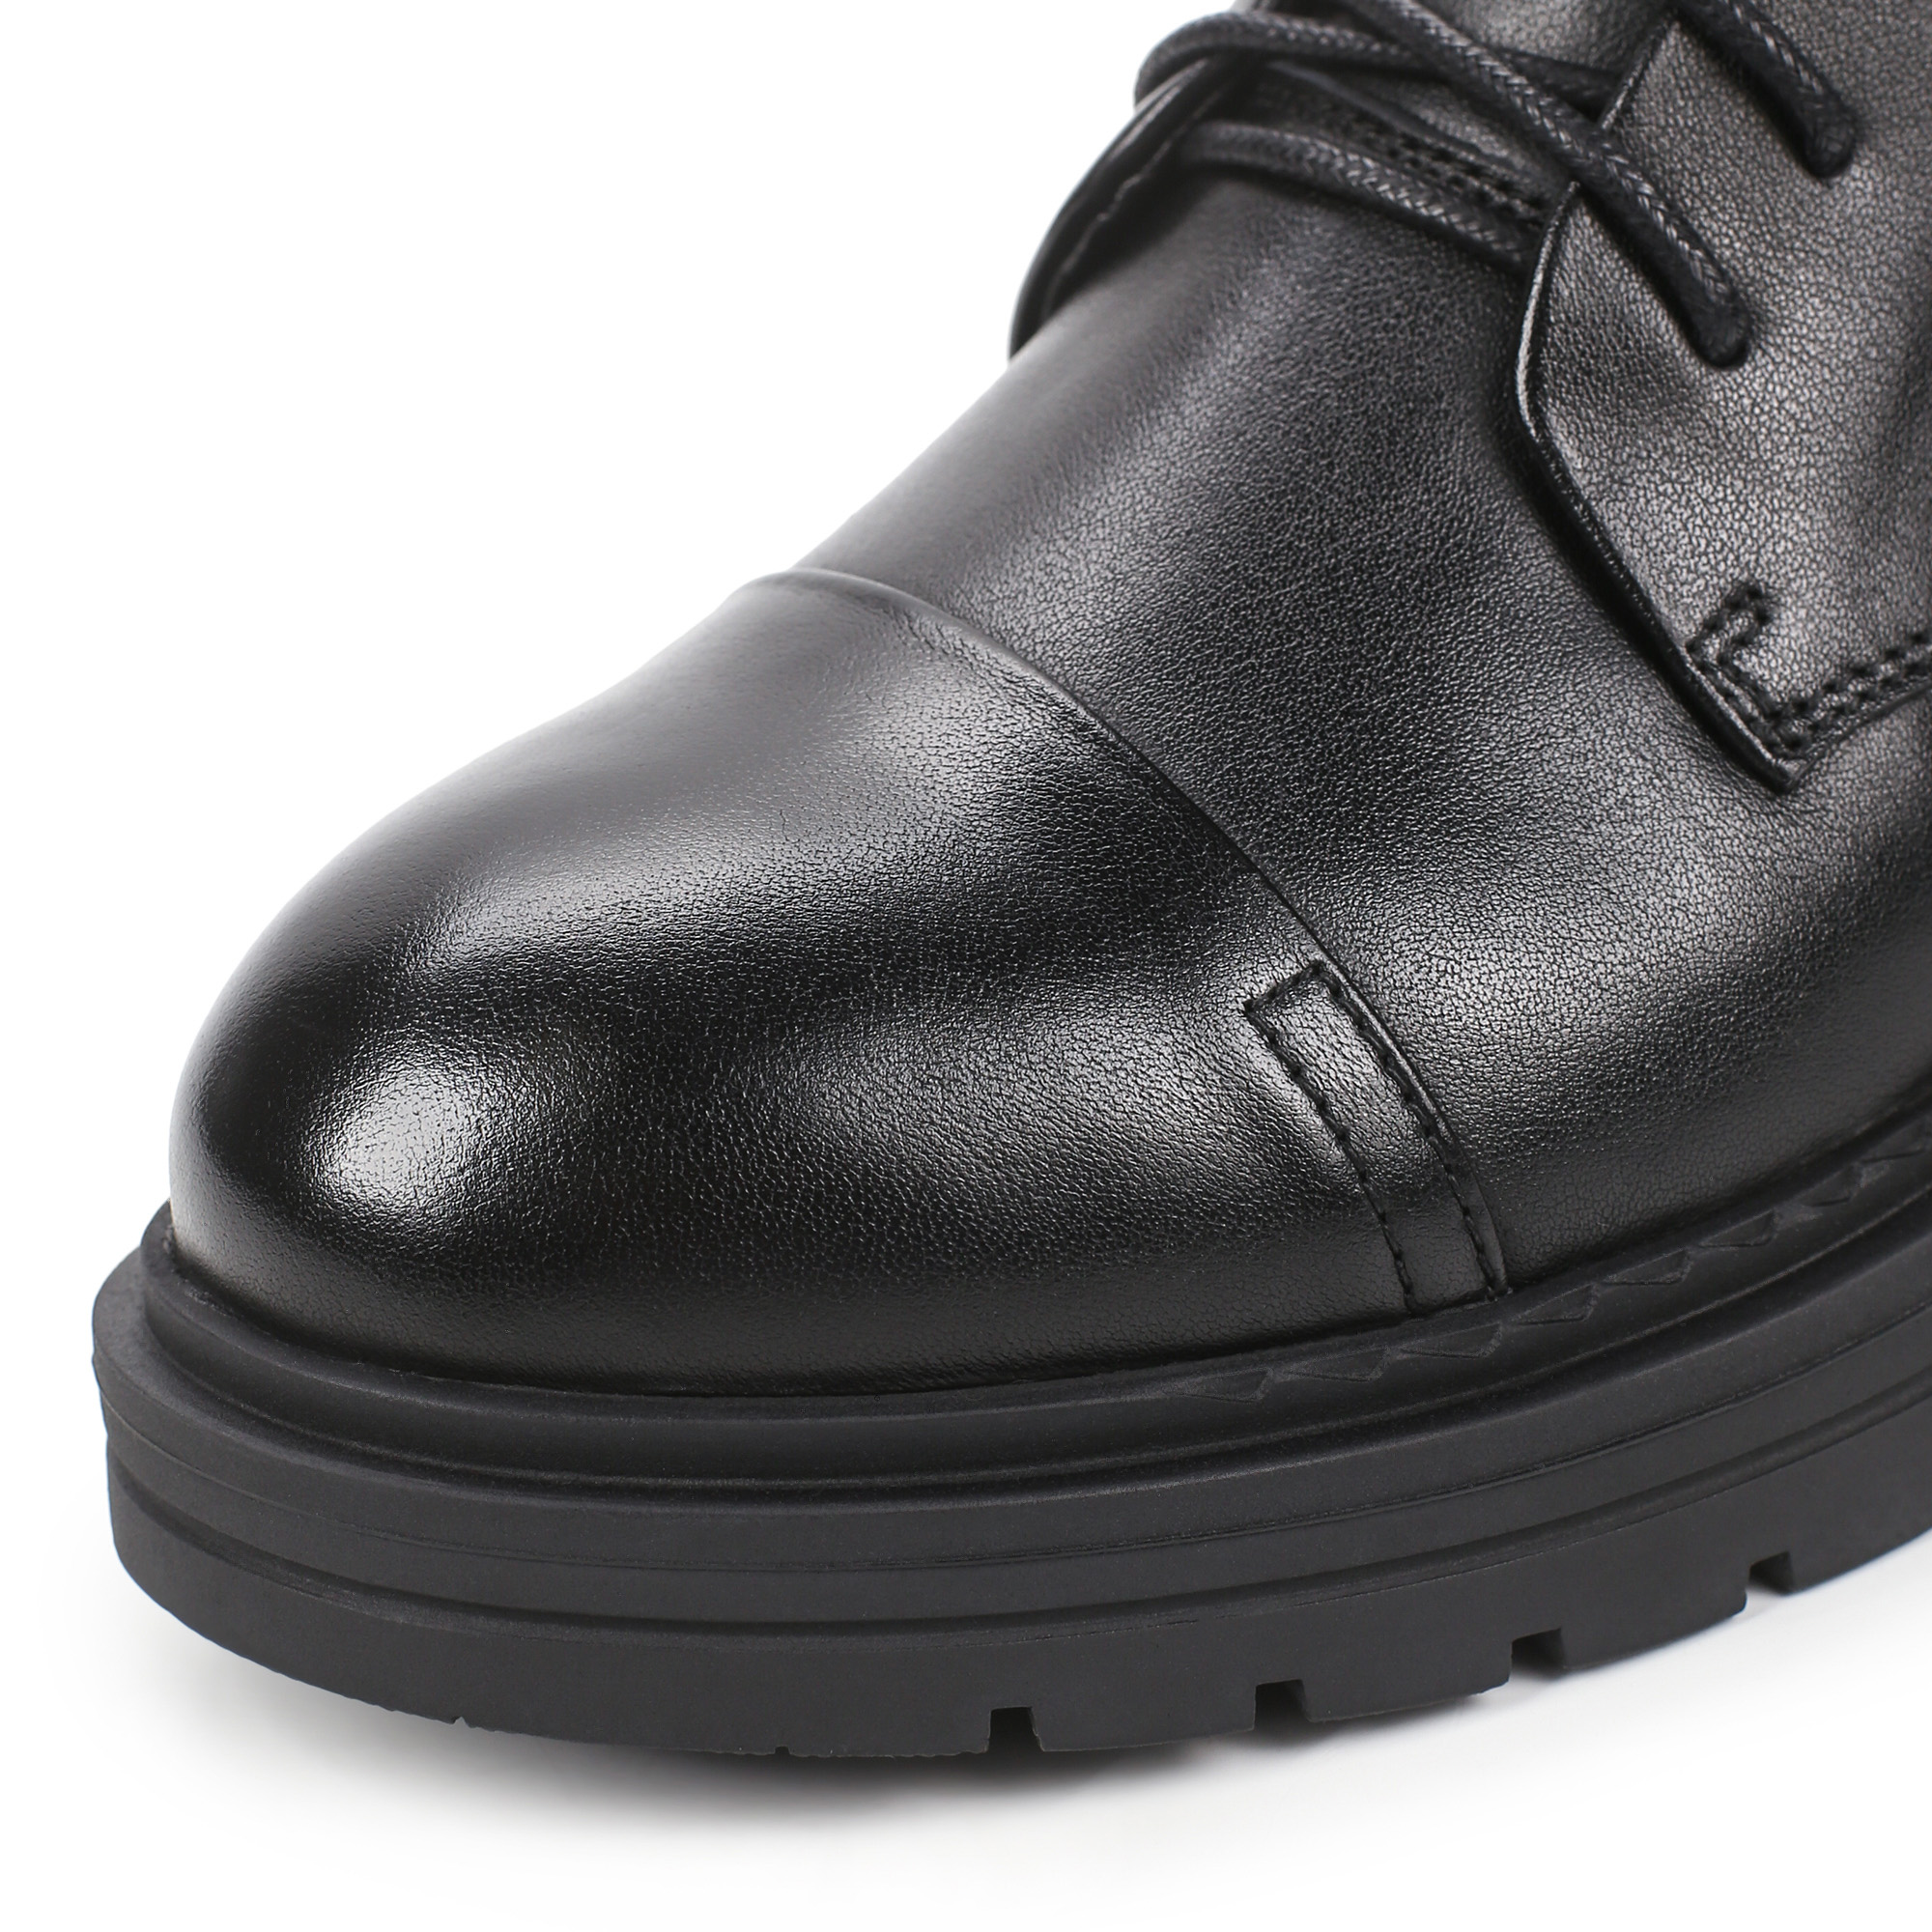 Ботинки Thomas Munz 233-695A-2102, цвет черный, размер 39 - фото 6